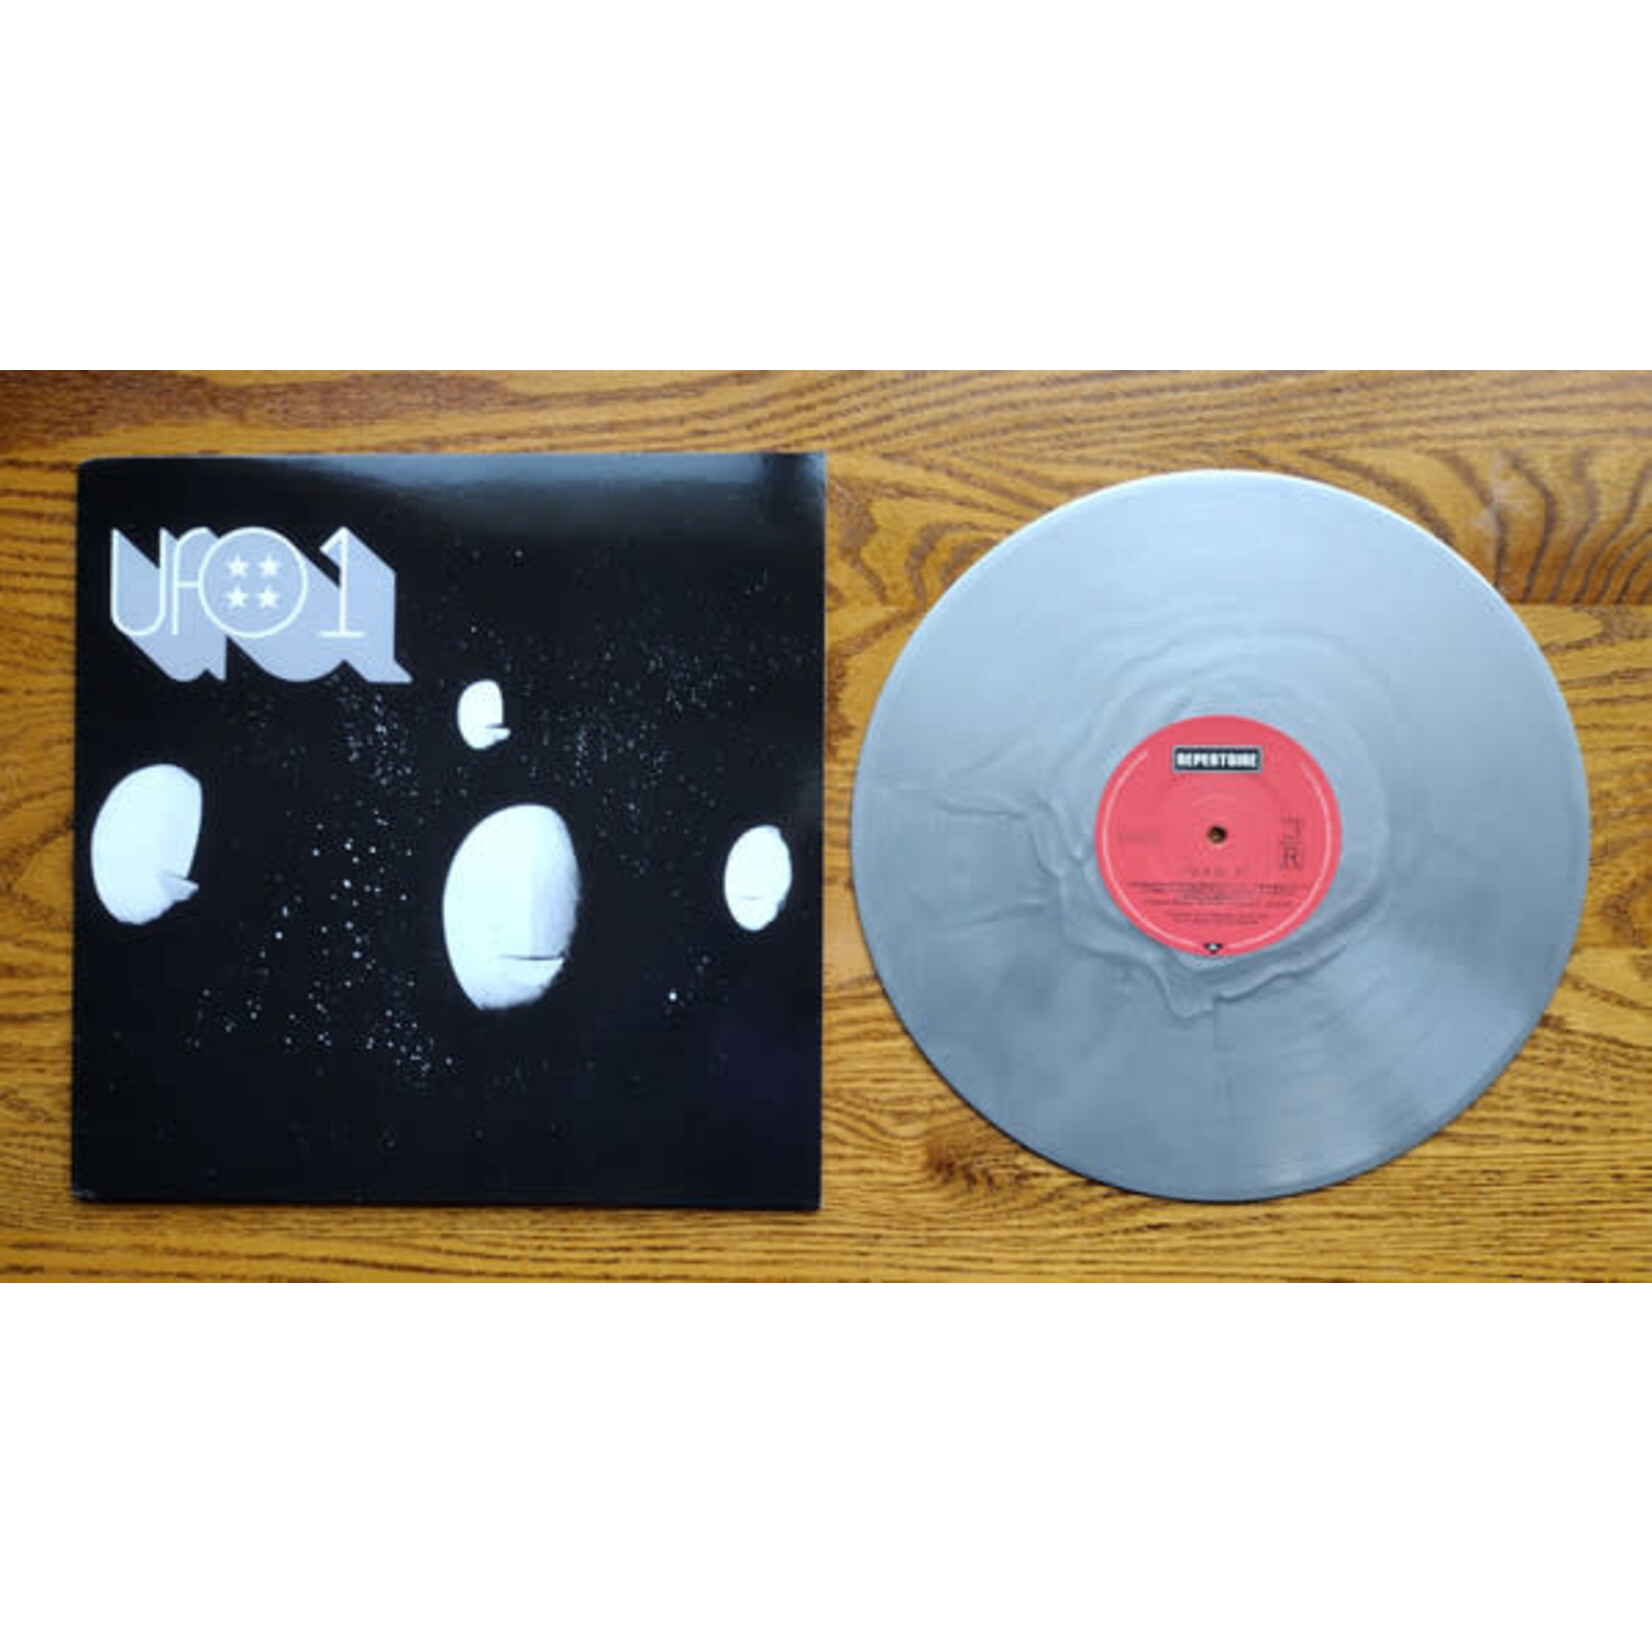 [New] U.F.O. - UFO 1 (silver vinyl)